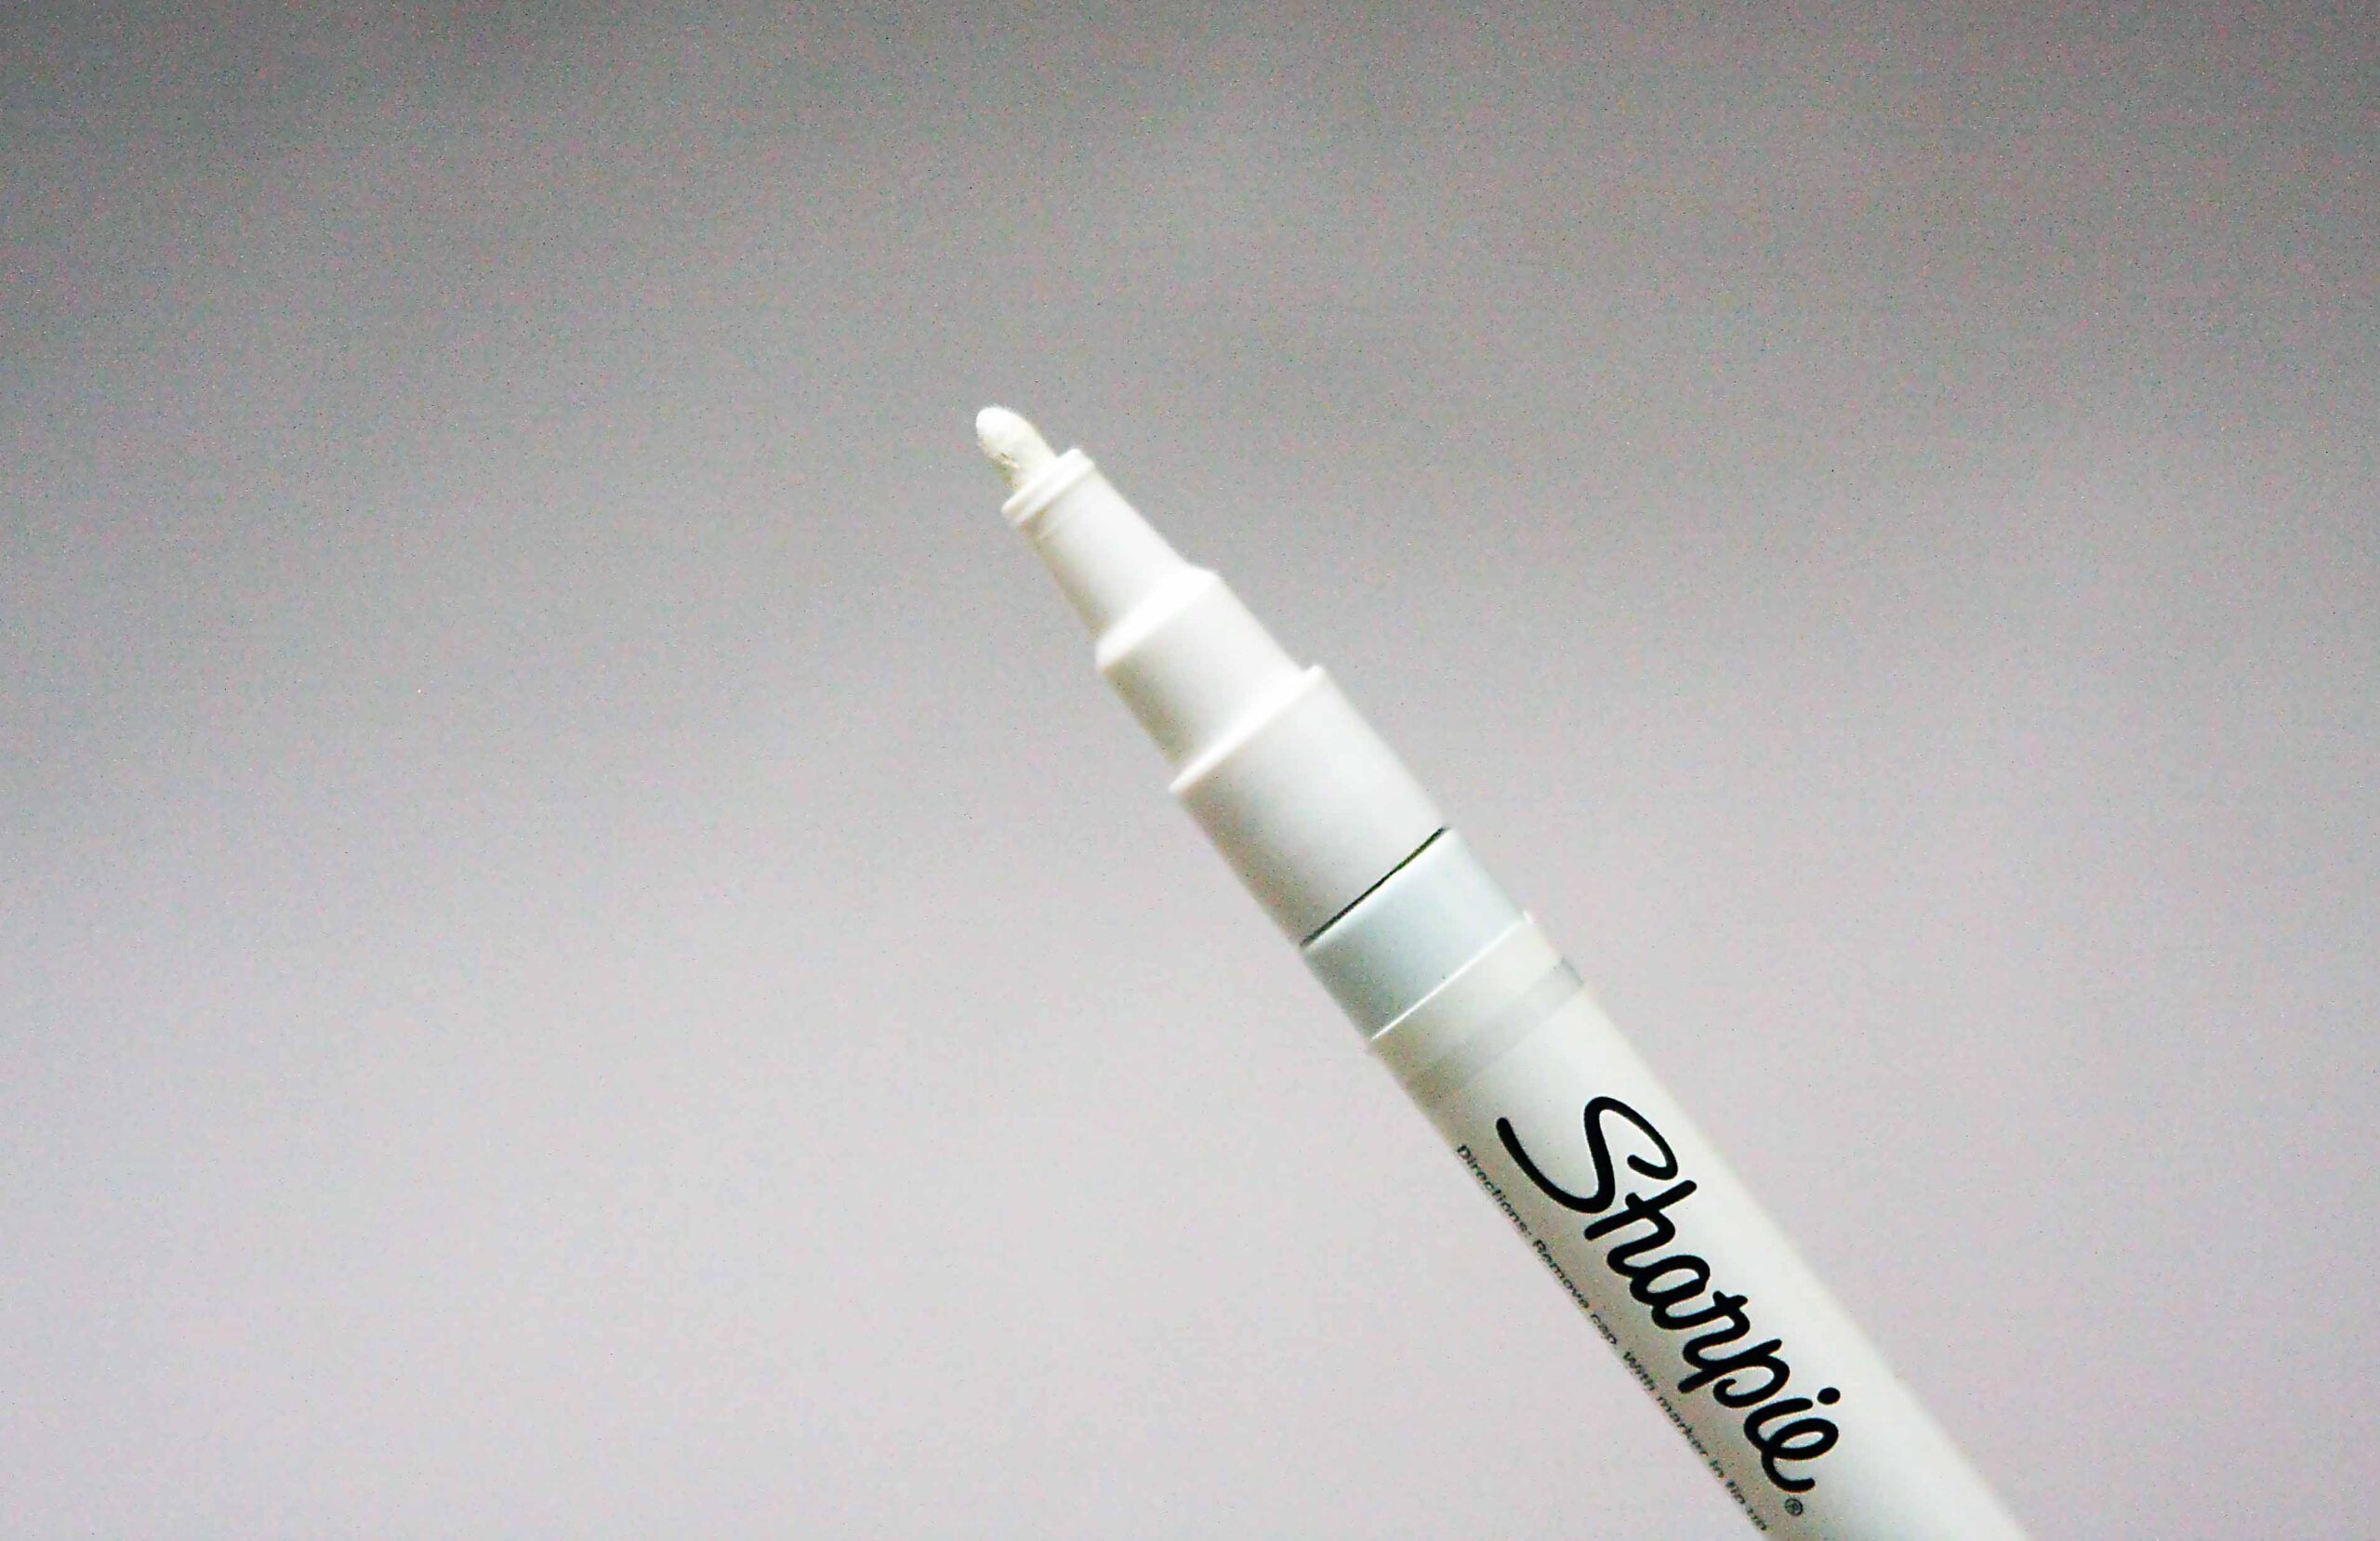 Sharpie Paint Marker Fine White